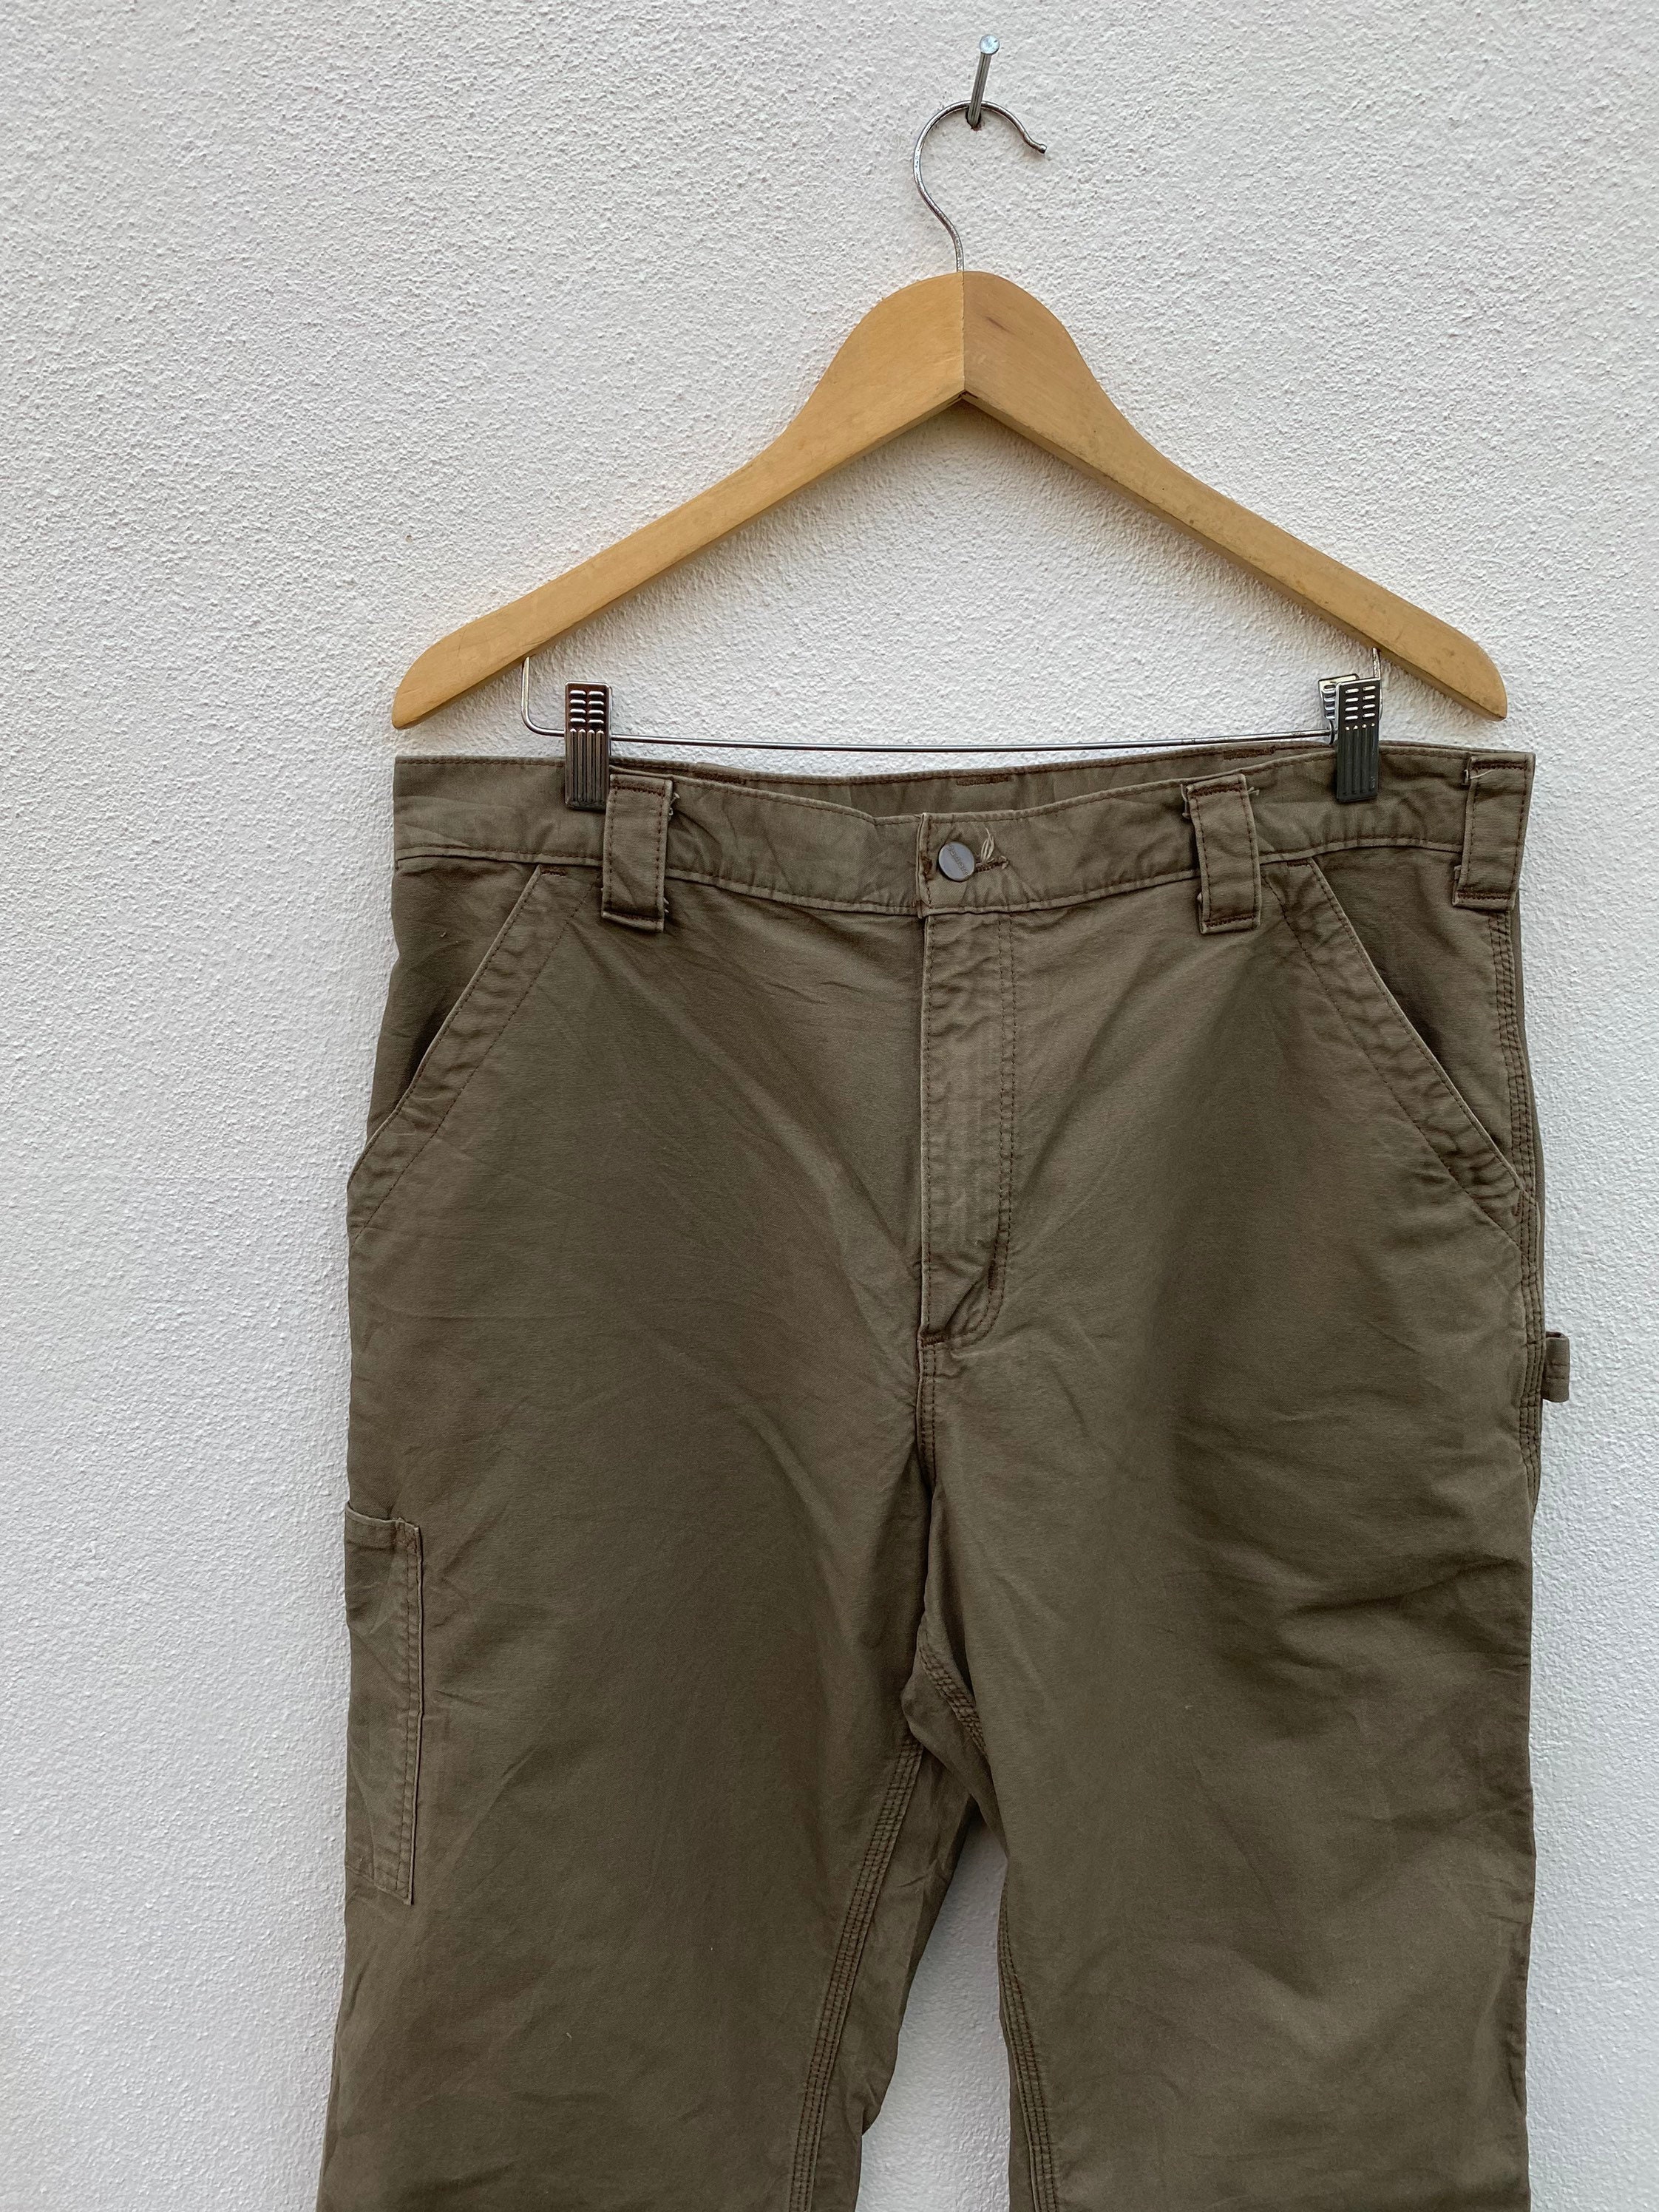 Vintage Carharrt Cargo Canvas Trouser pants saiz 36 | Etsy